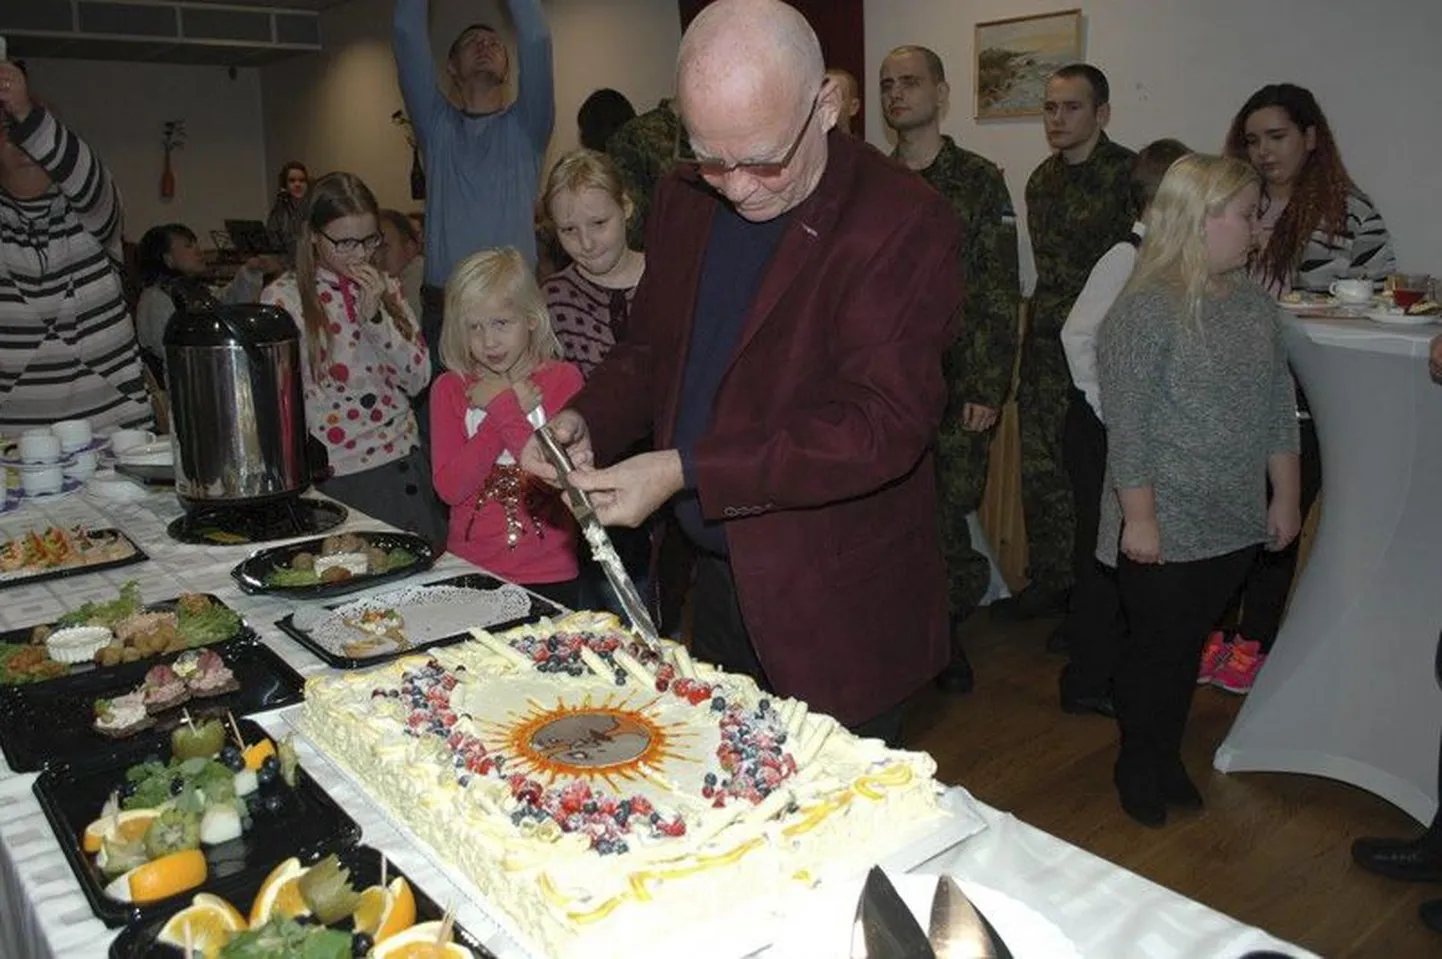 Tapalt pärit tuntud animafilmirežissöör Priit Pärn lõikas lahti viienda omanimelise festivali tordid.